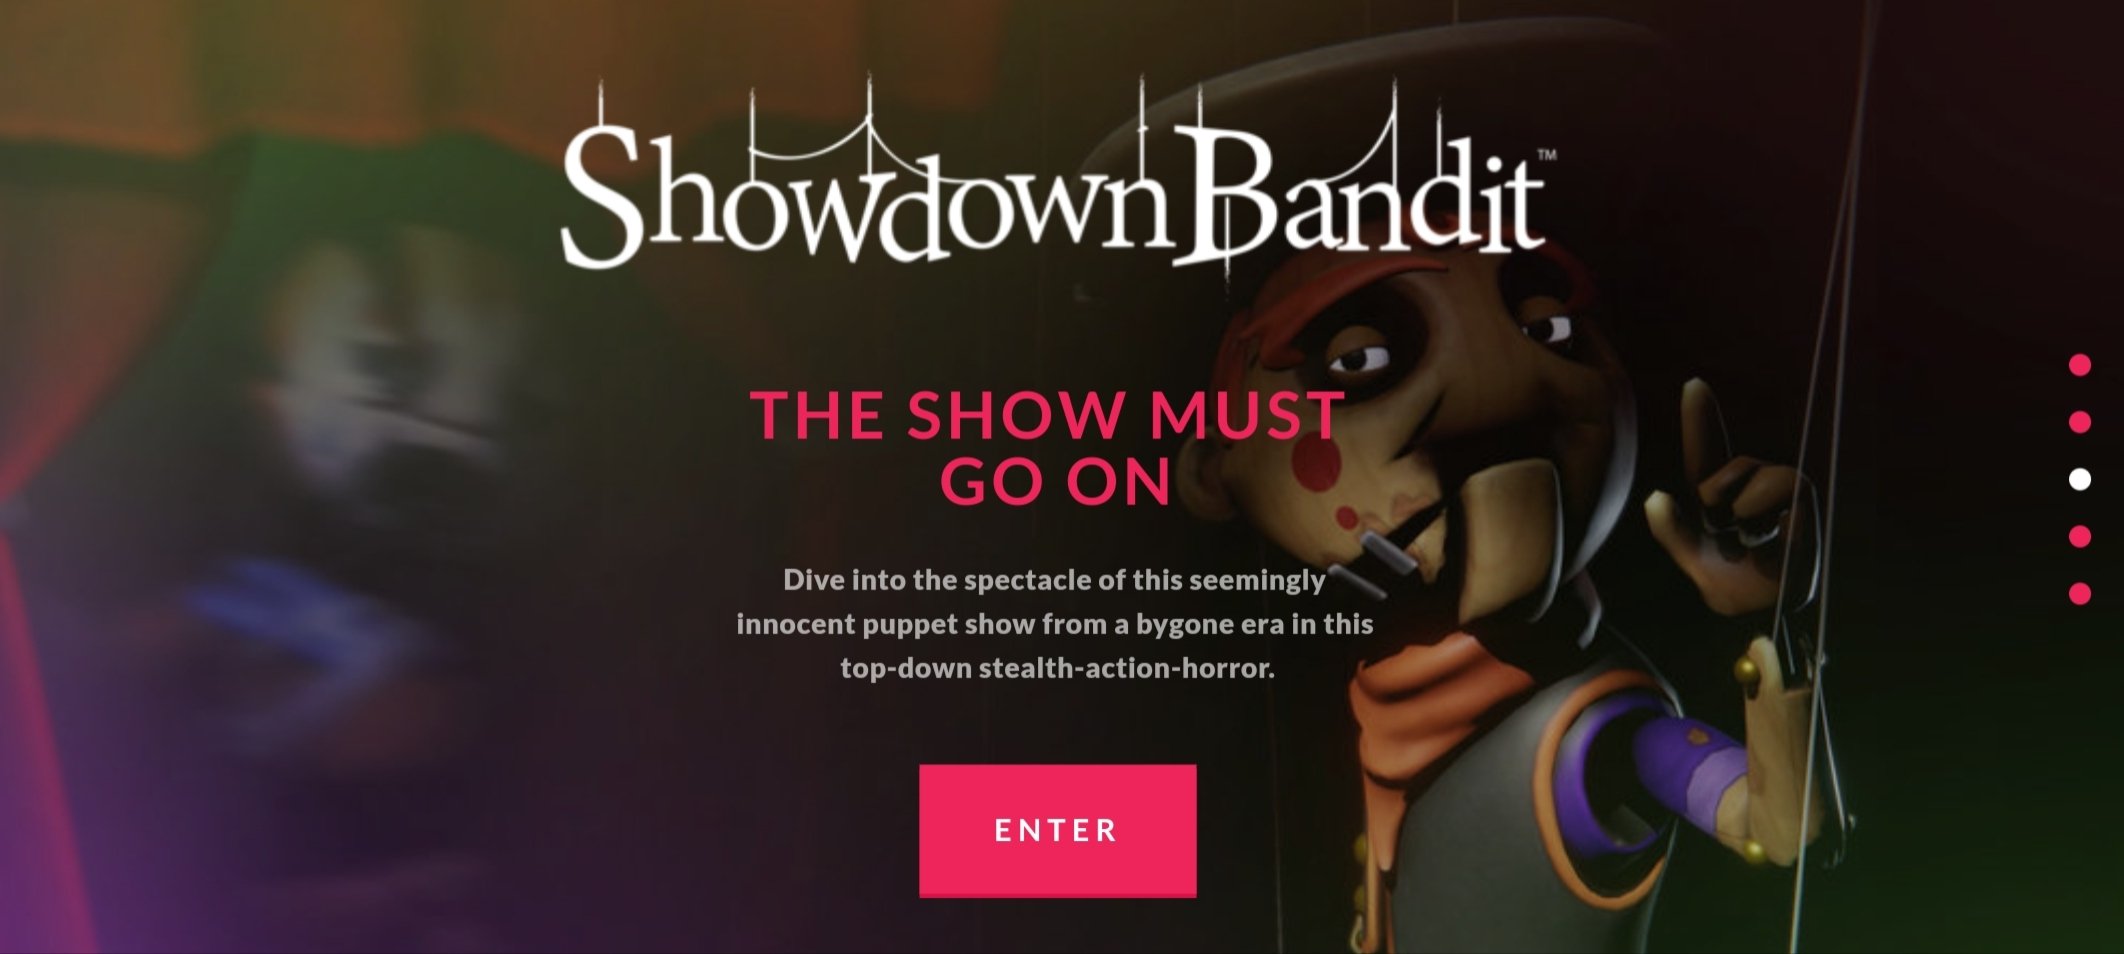 SAVE SHOWDOWN BANDIT (@BanditSave) / X